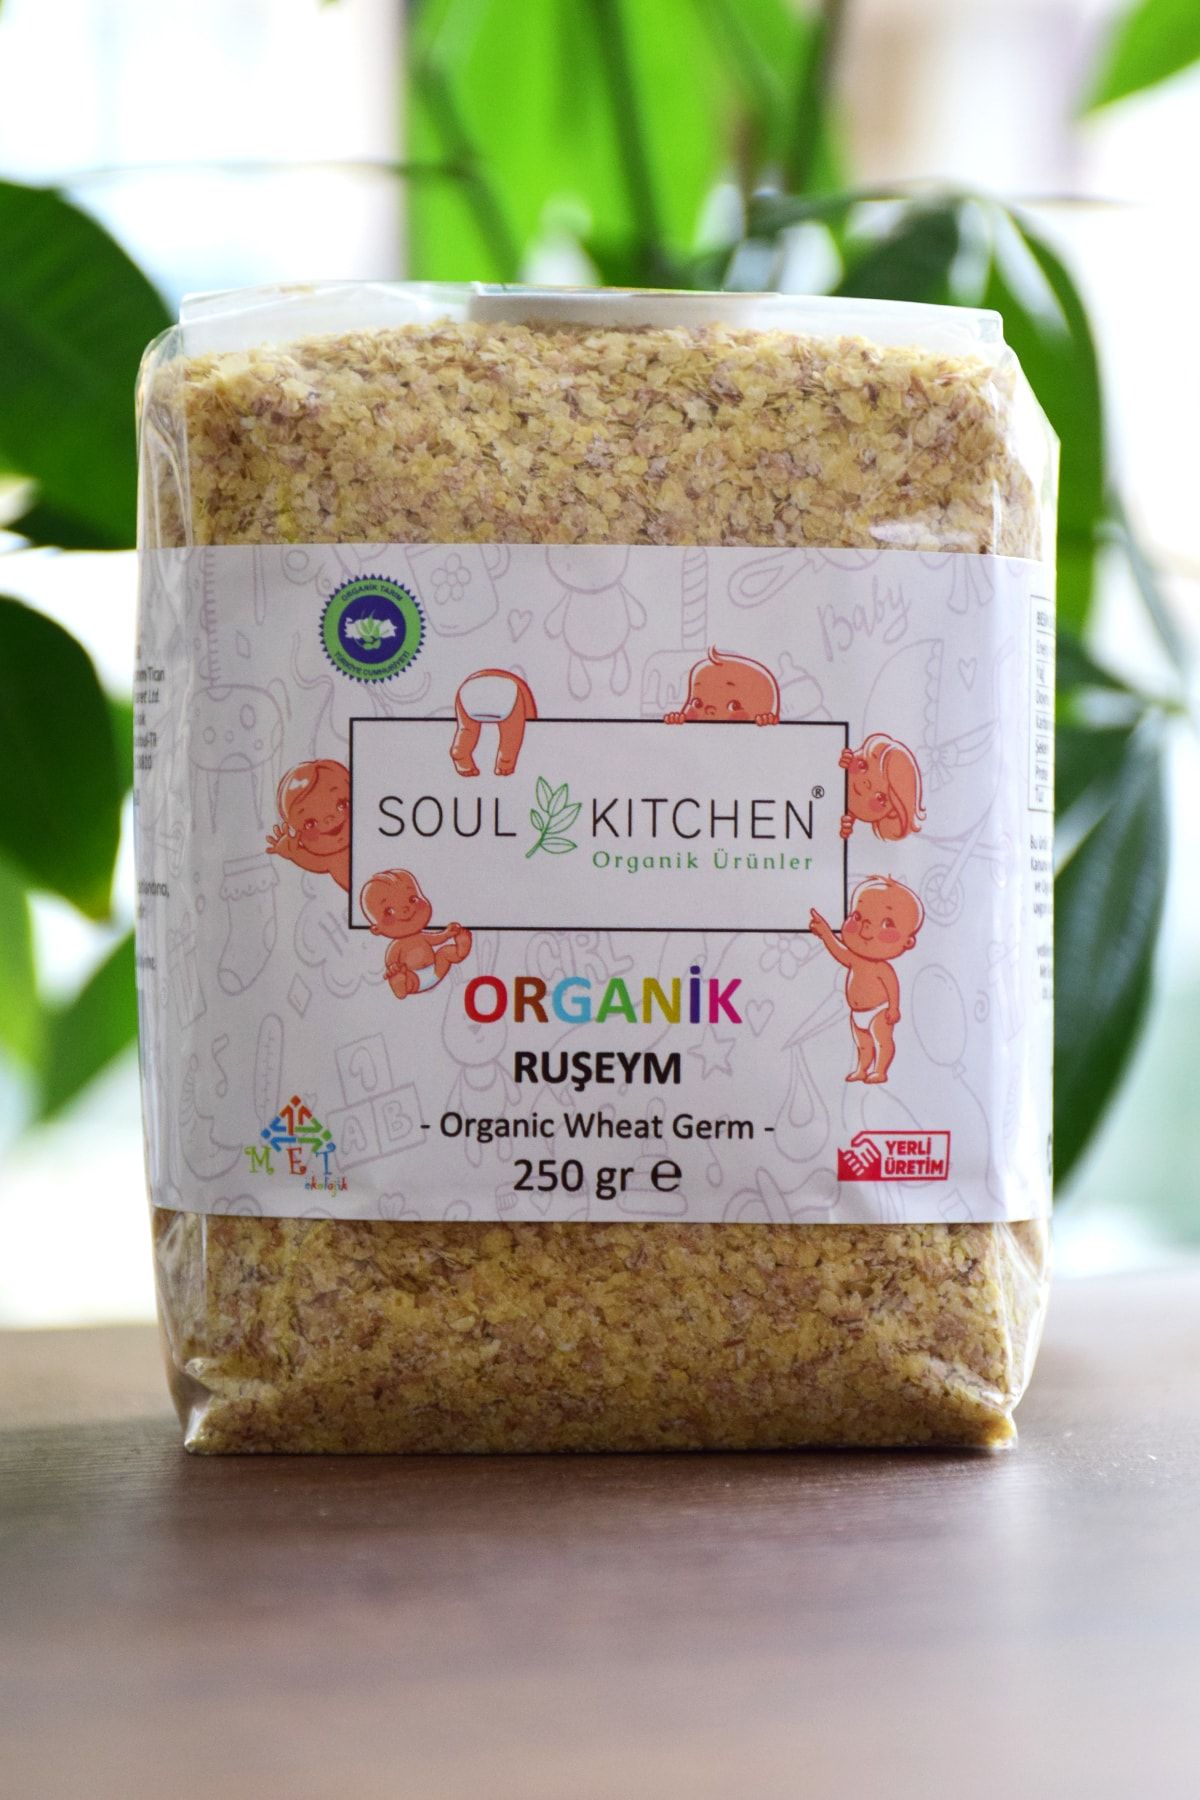 Soul Kitchen Organik Ürünler Organik Bebek Ruşeym 250gr - Eko Paket